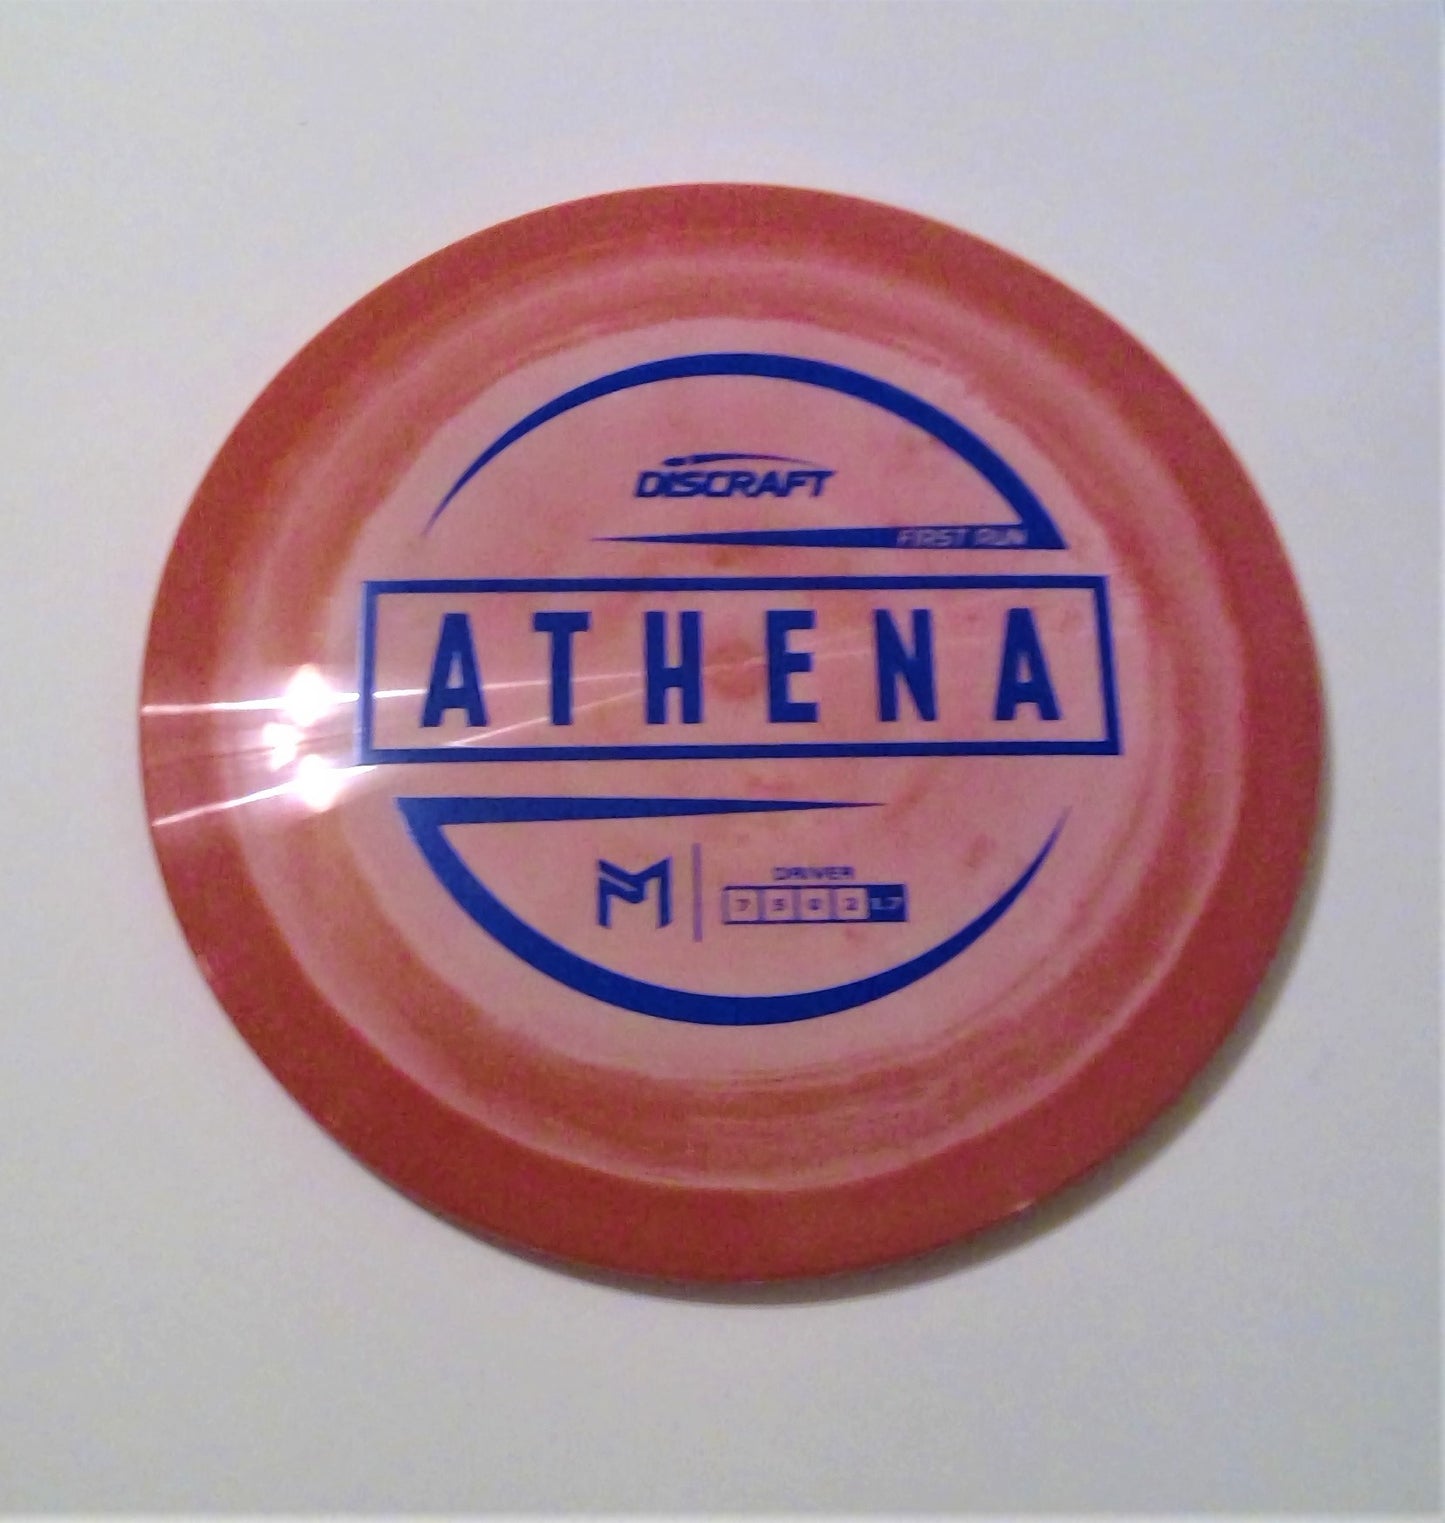 Athena - Paul McBeth ESP